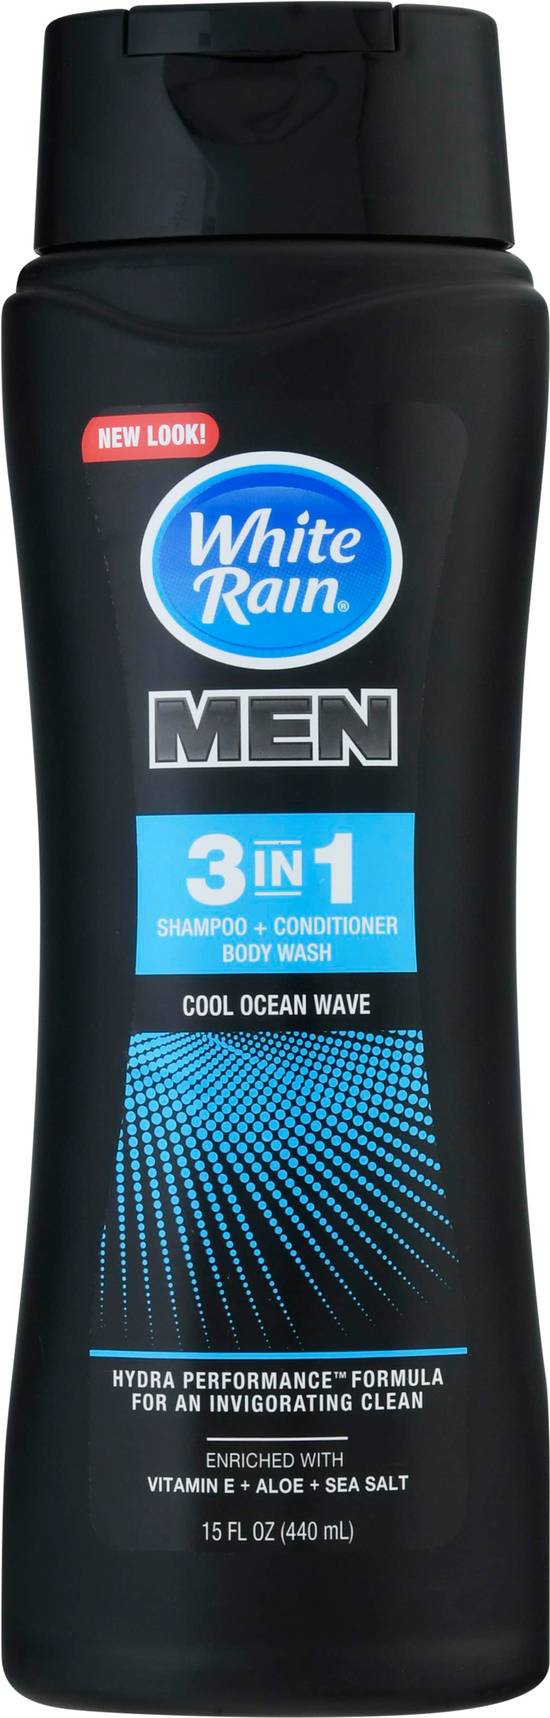 White Rain Men 3 in 1 Shampoo, Conditioner and Body Wash (15 fl oz)